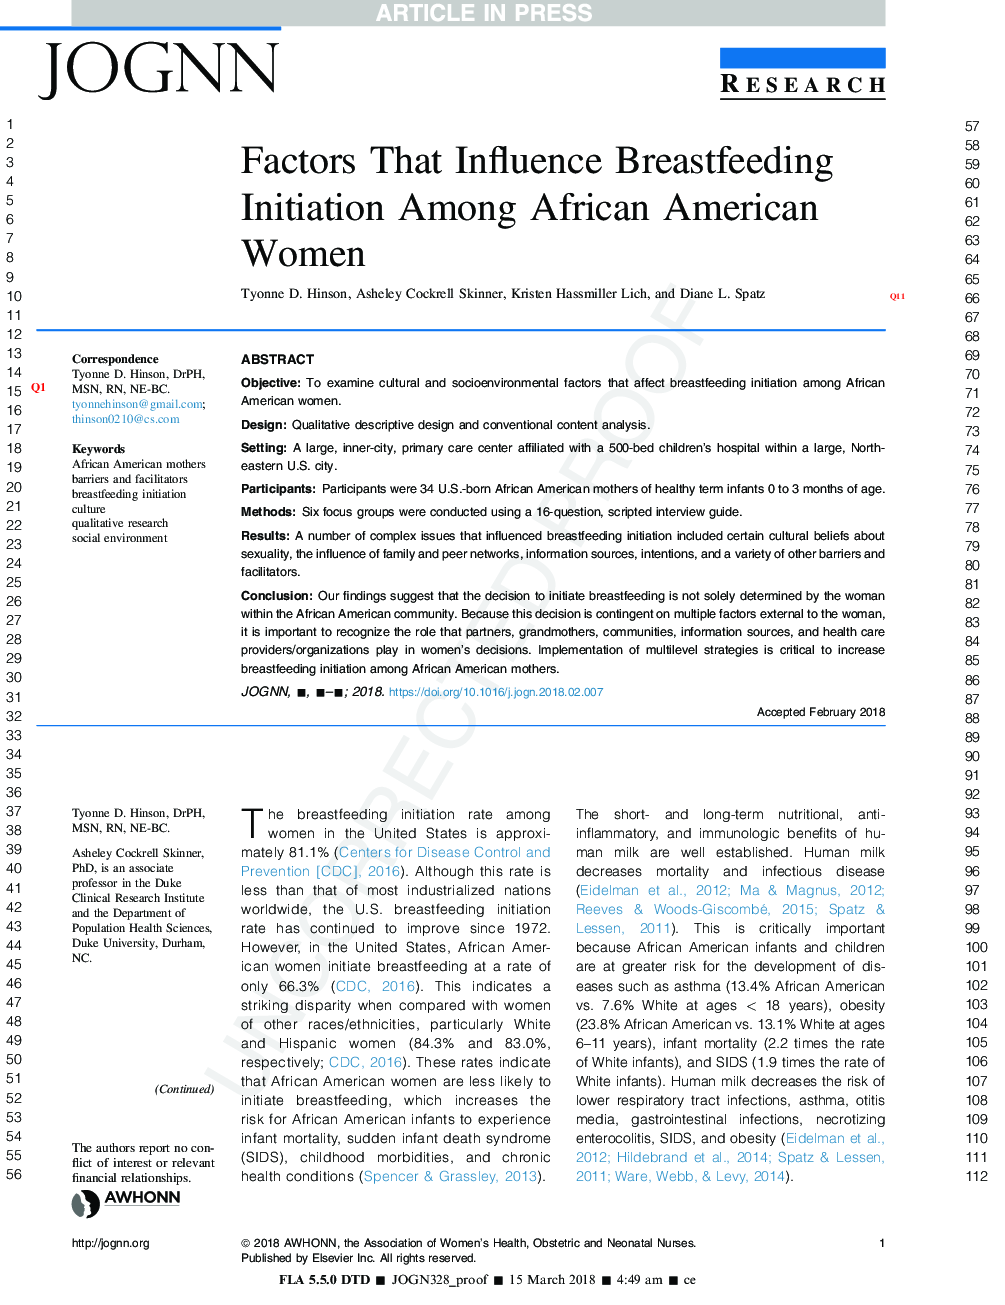 عوامل موثر بر شروع تغذیه با شیر مادر در میان زنان آفریقایی آمریکایی 